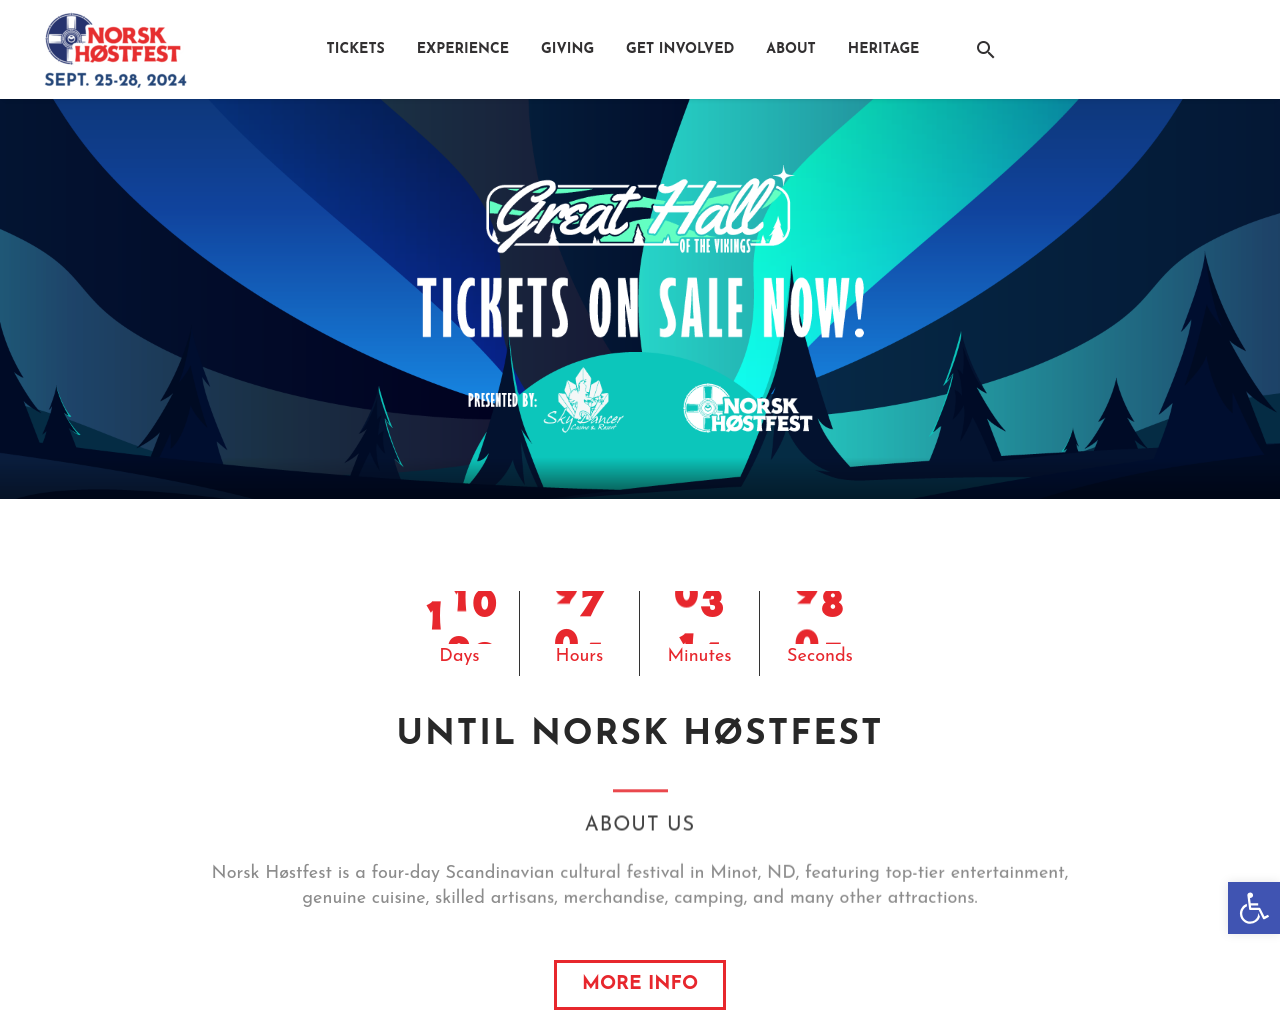 hostfest.com